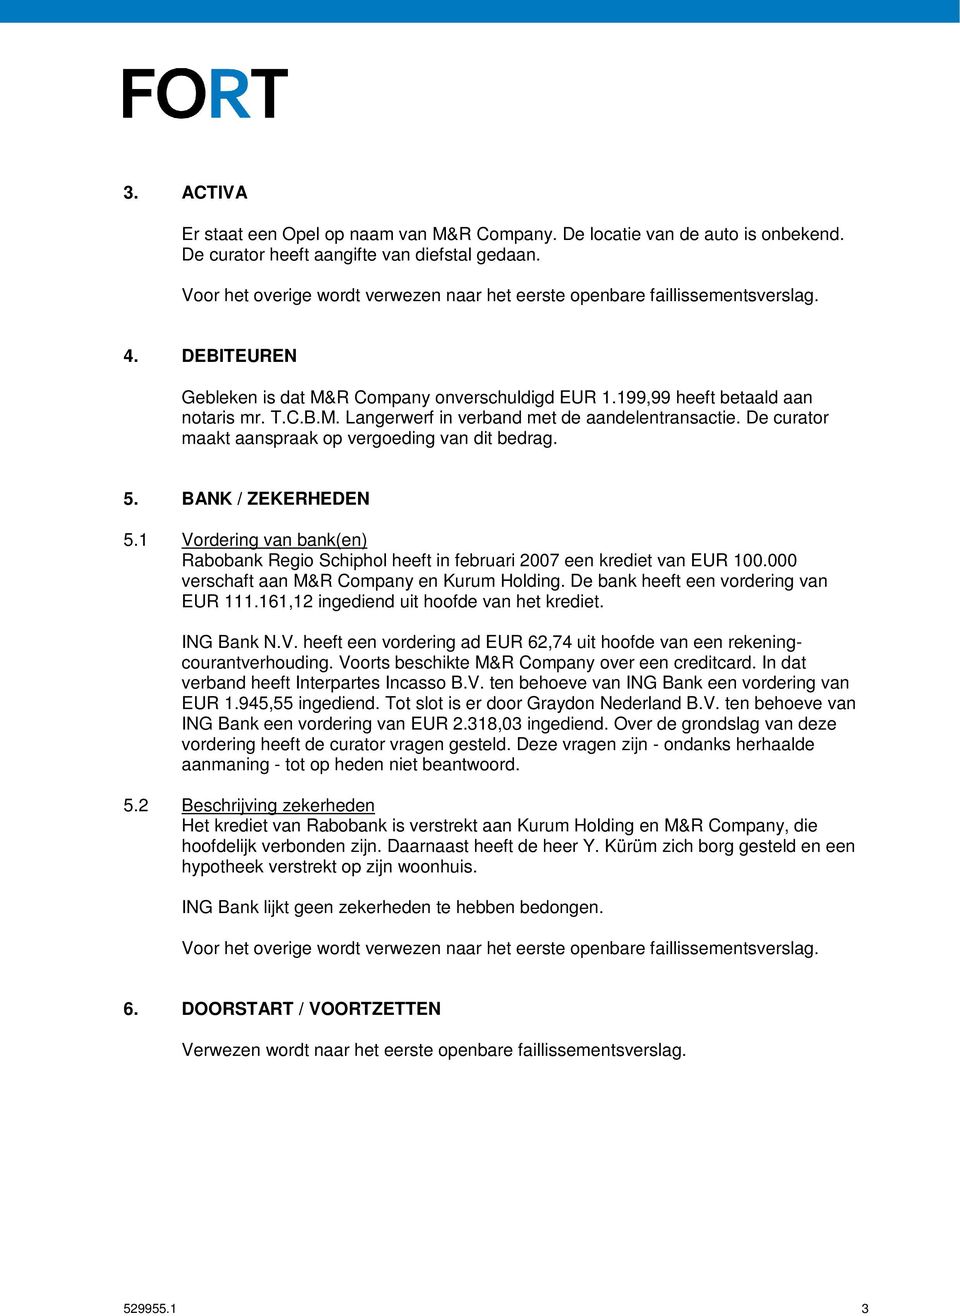 1 Vordering van bank(en) Rabobank Regio Schiphol heeft in februari 2007 een krediet van EUR 100.000 verschaft aan M&R Company en Kurum Holding. De bank heeft een vordering van EUR 111.